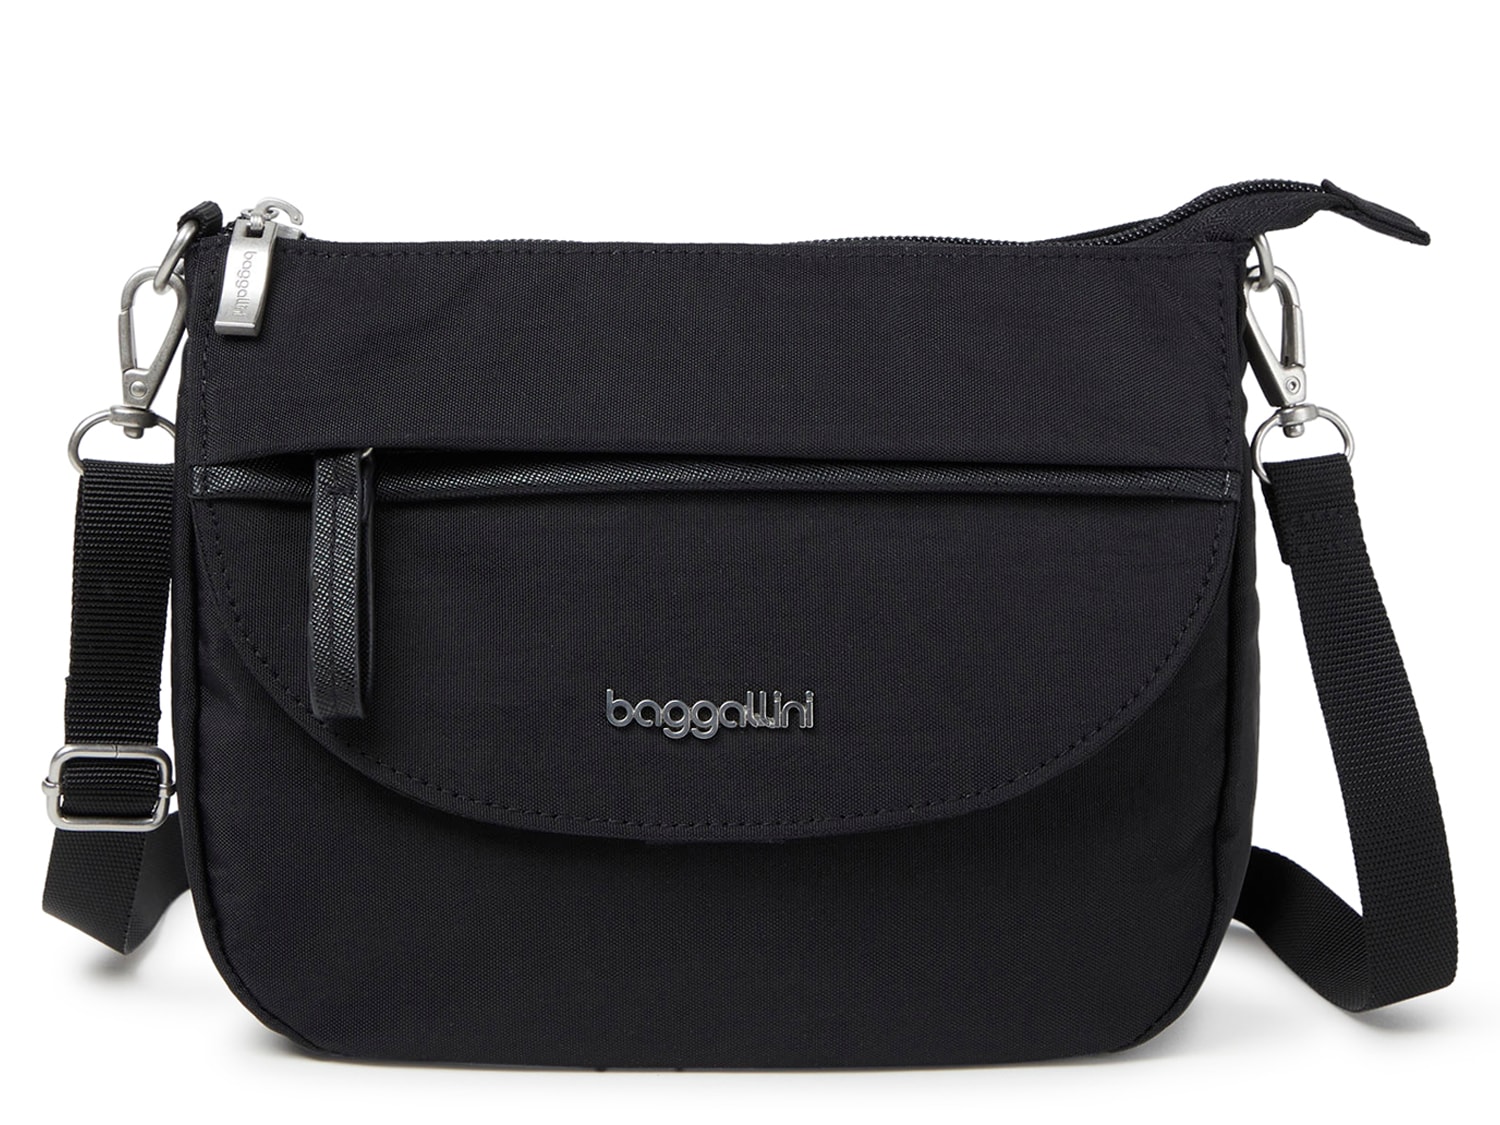 Baggallini Clear Pocket Crossbody Bag